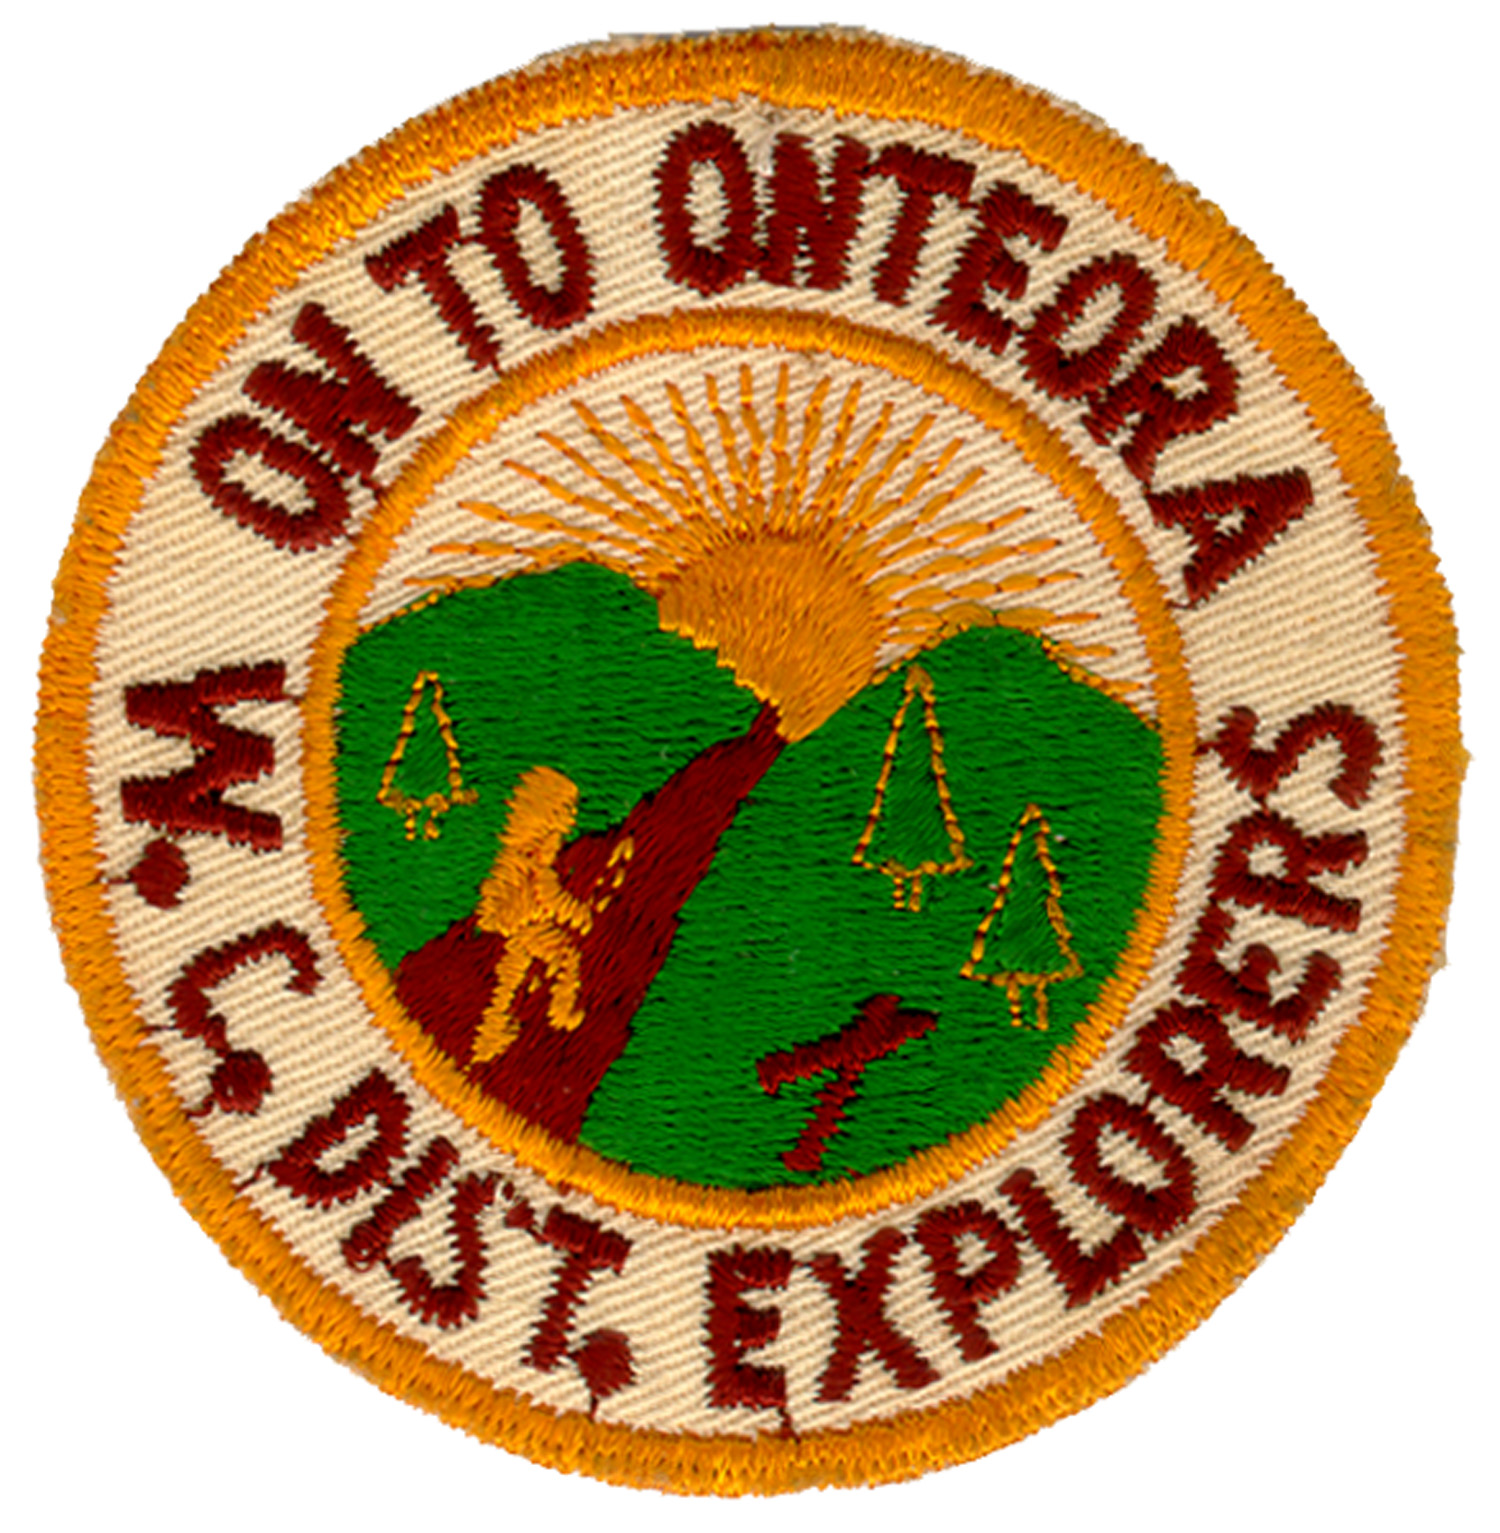 Onteora patches